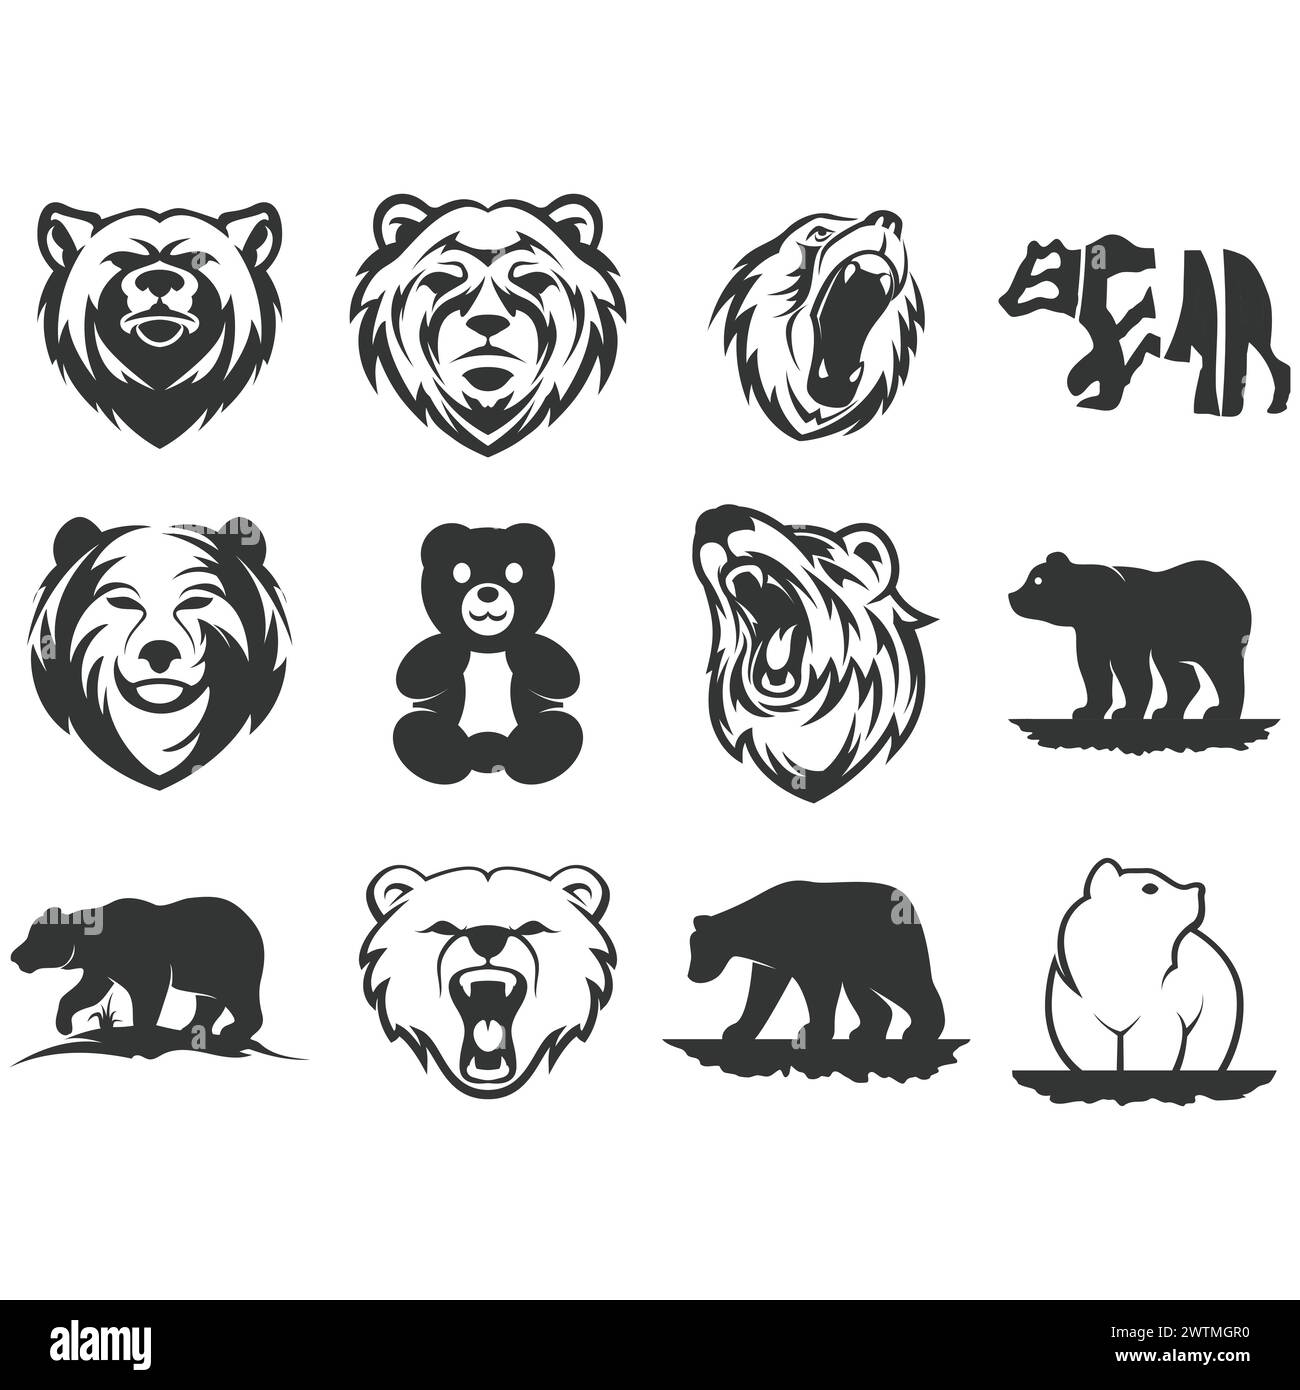 Collection of vector bear logos Stock Vector